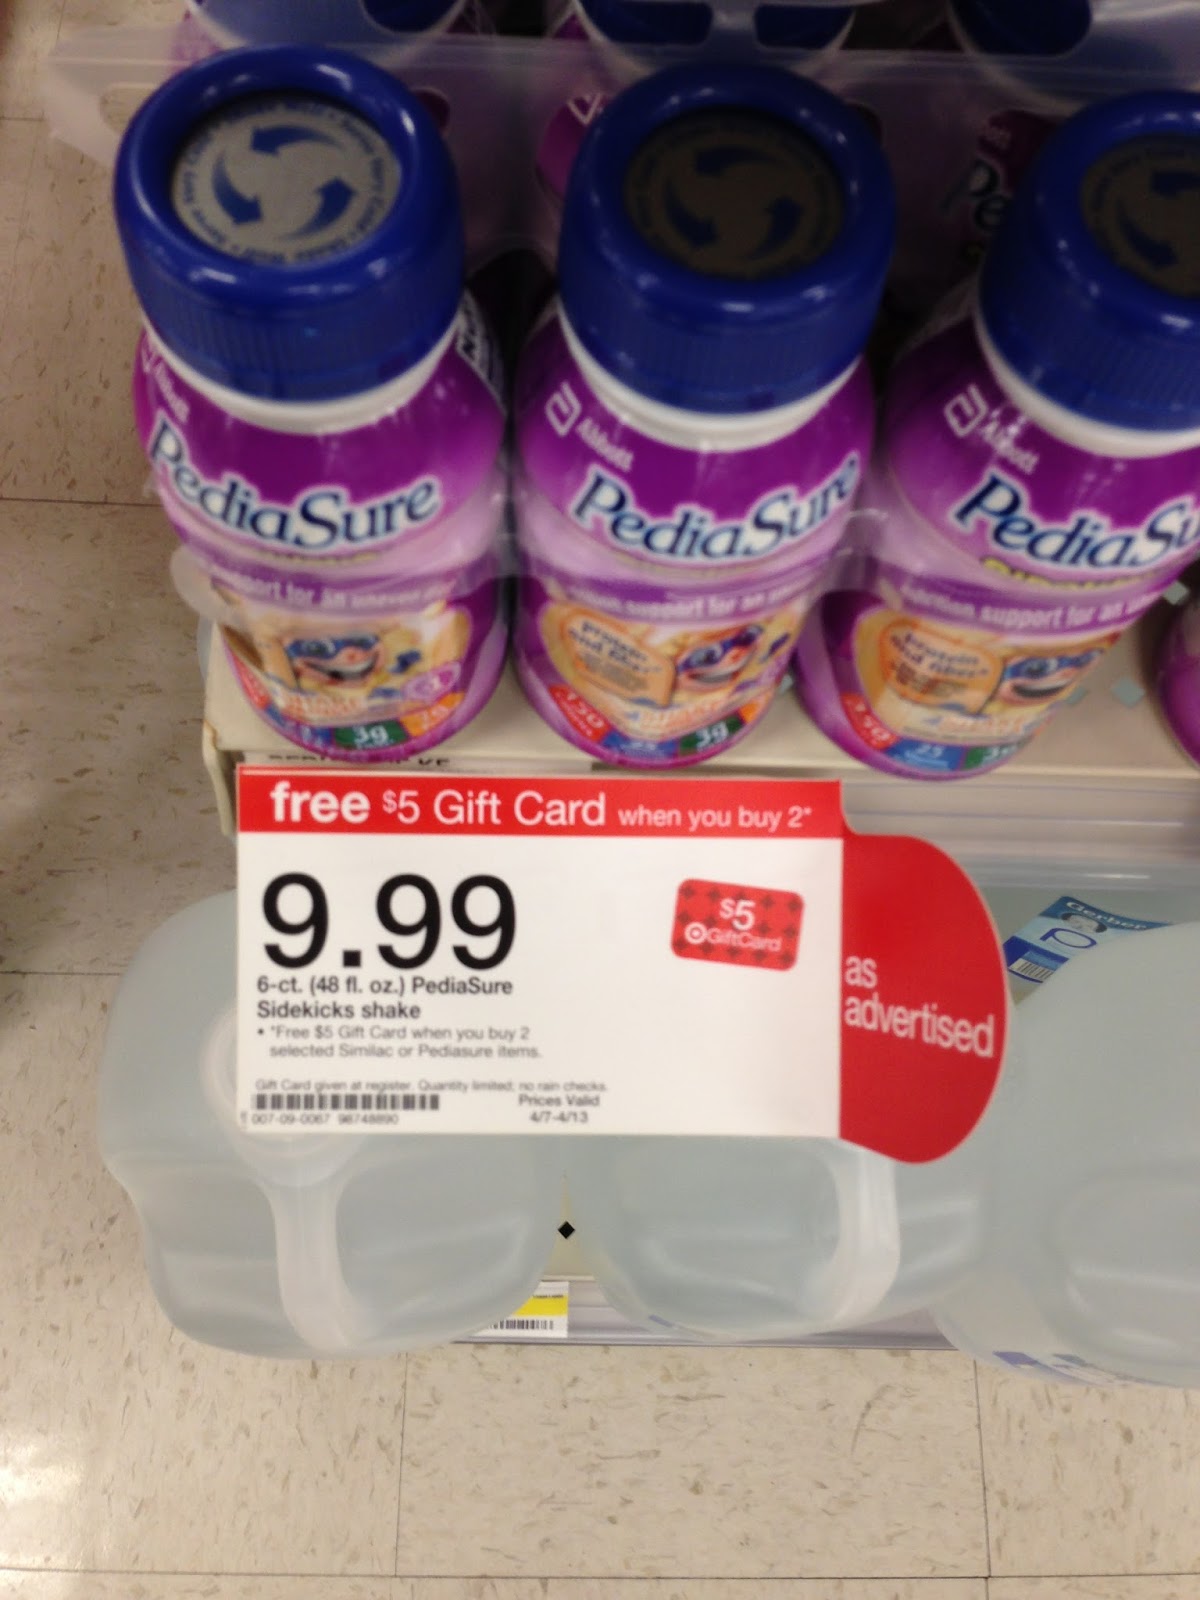 Lemon Savings PediaSure Gift Card Deal Target